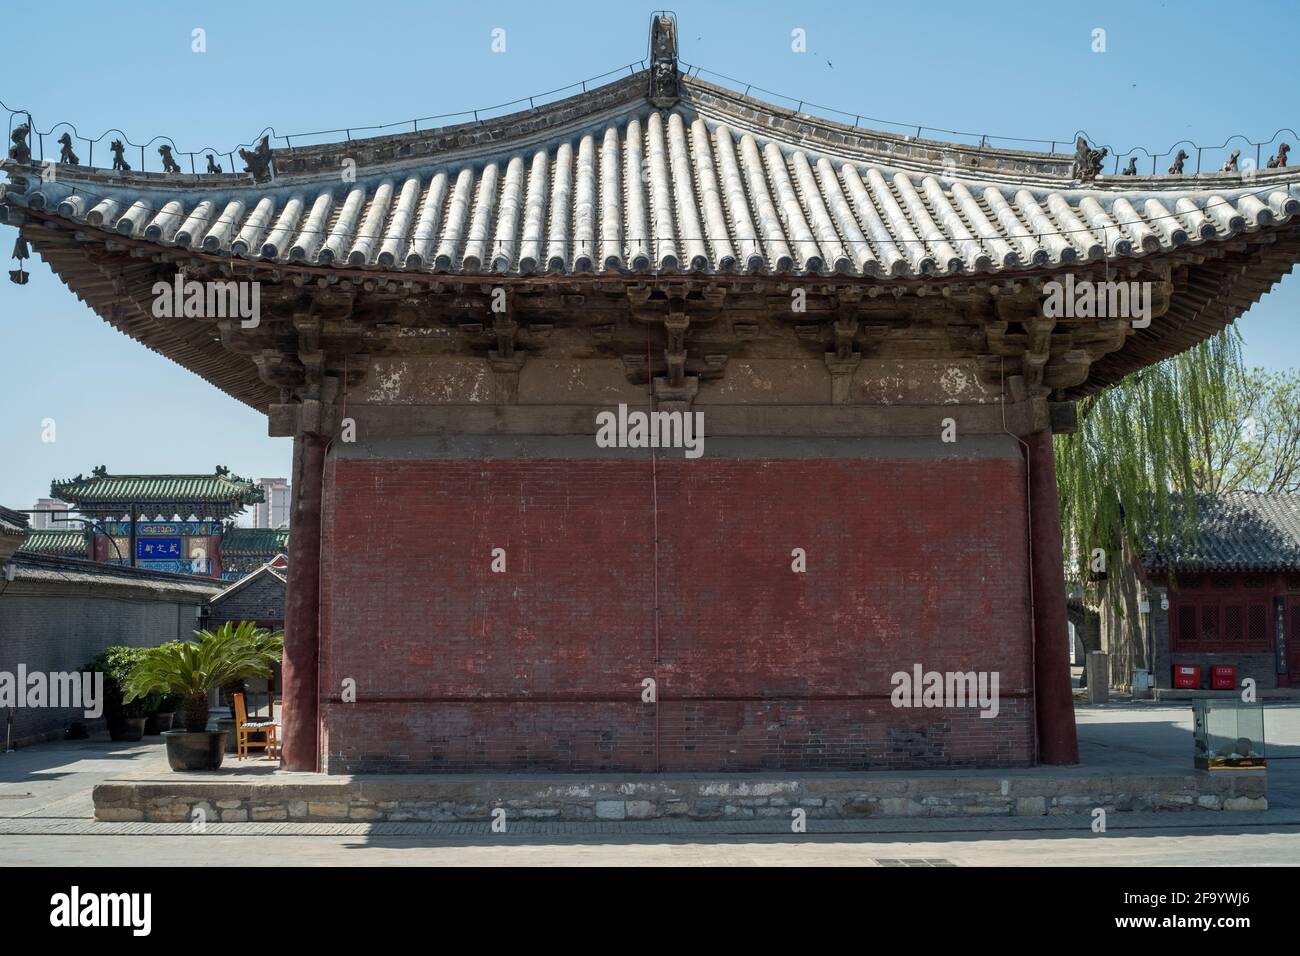 Un côté de la porte d'entrée du temple de Dule. Jizhou, Tianjin, Chine. Banque D'Images